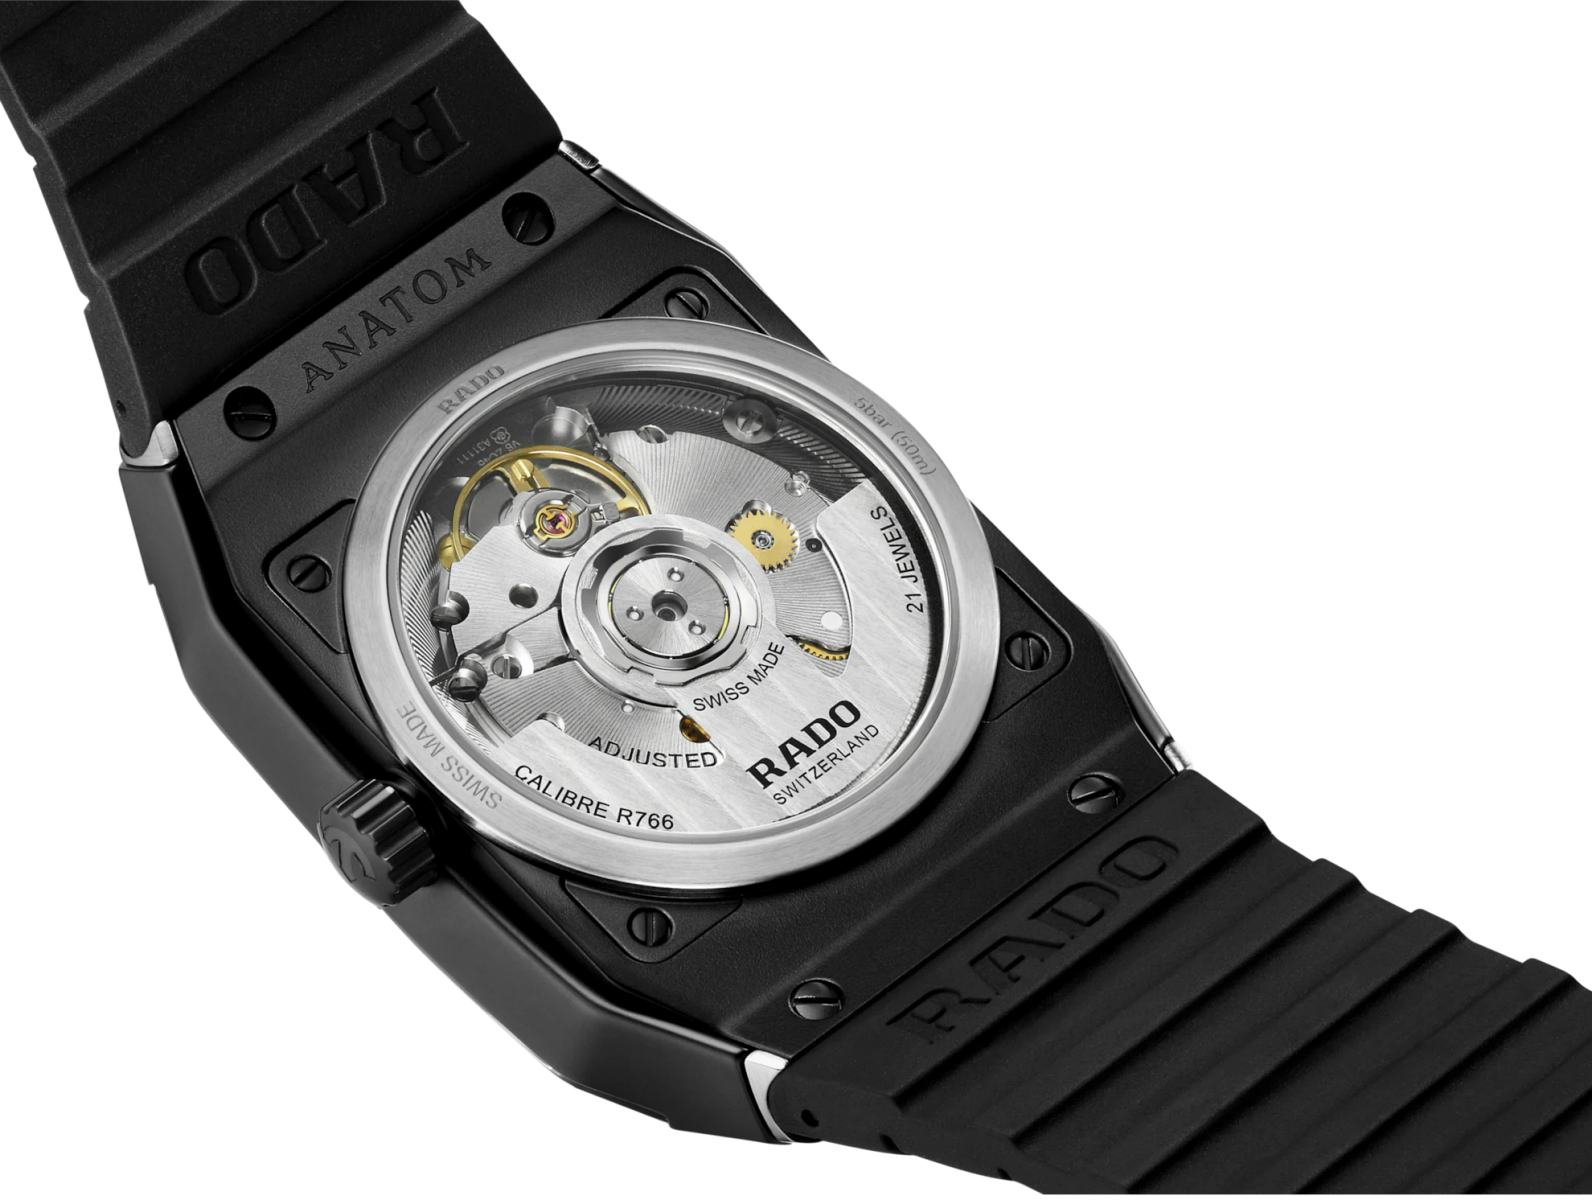 Rado Anatom. Popularny, ergonomiczny zegarek powraca po 40 latach